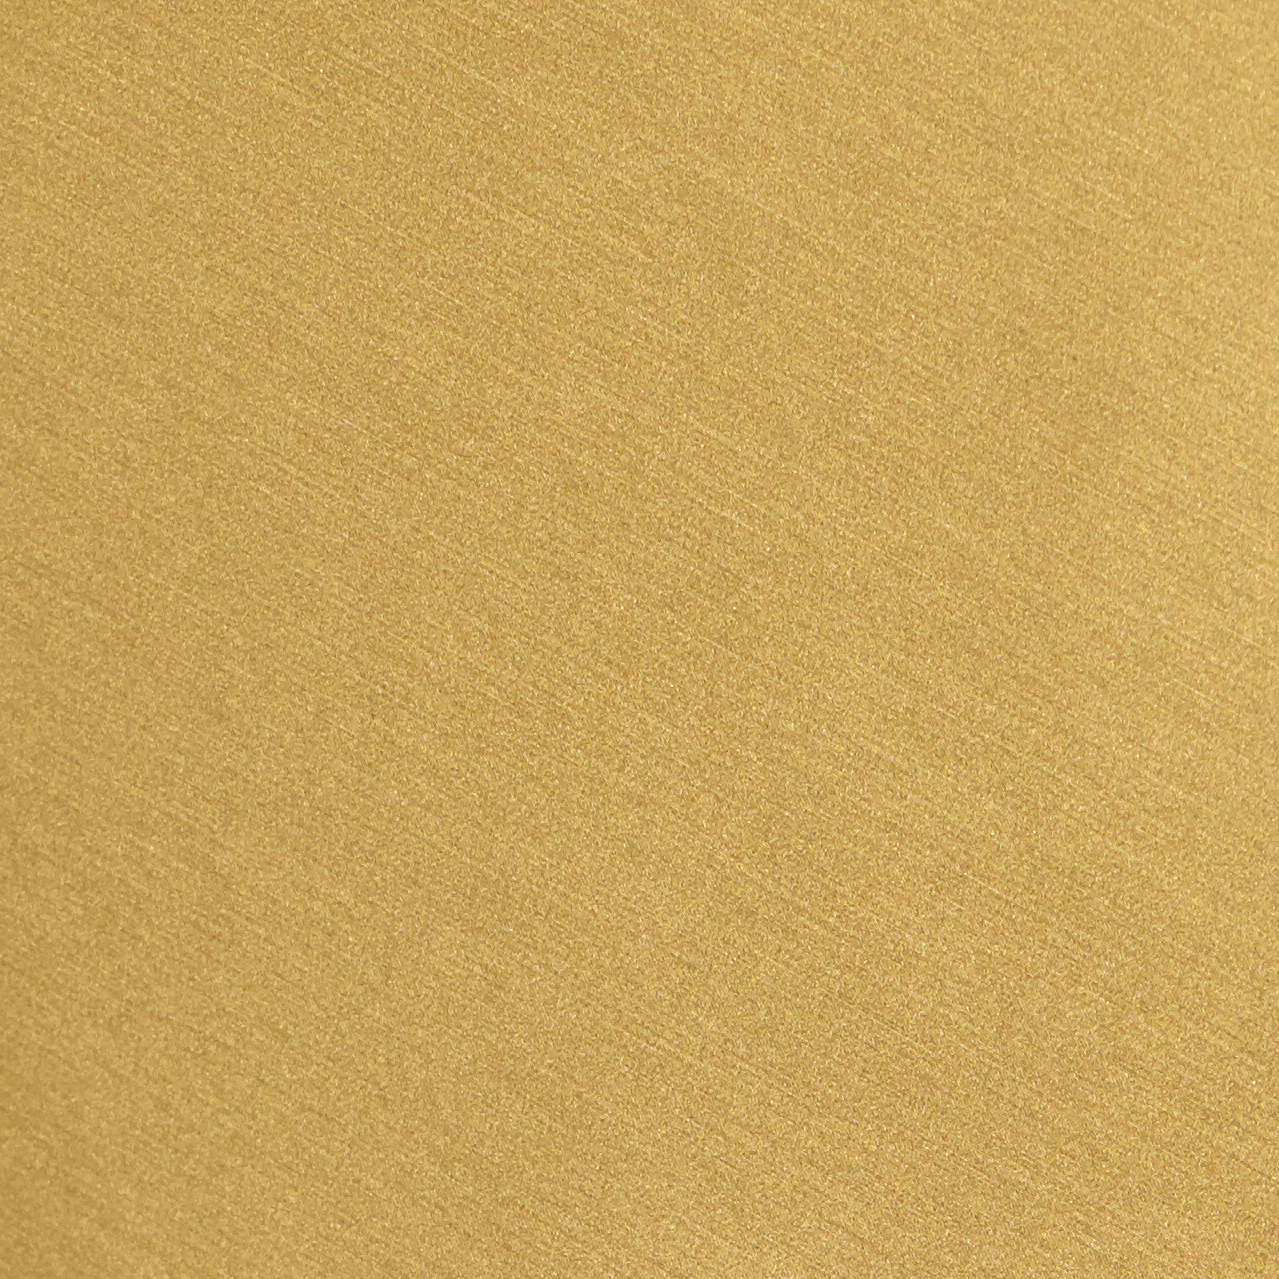 Fabric sample The Golden Chair matt